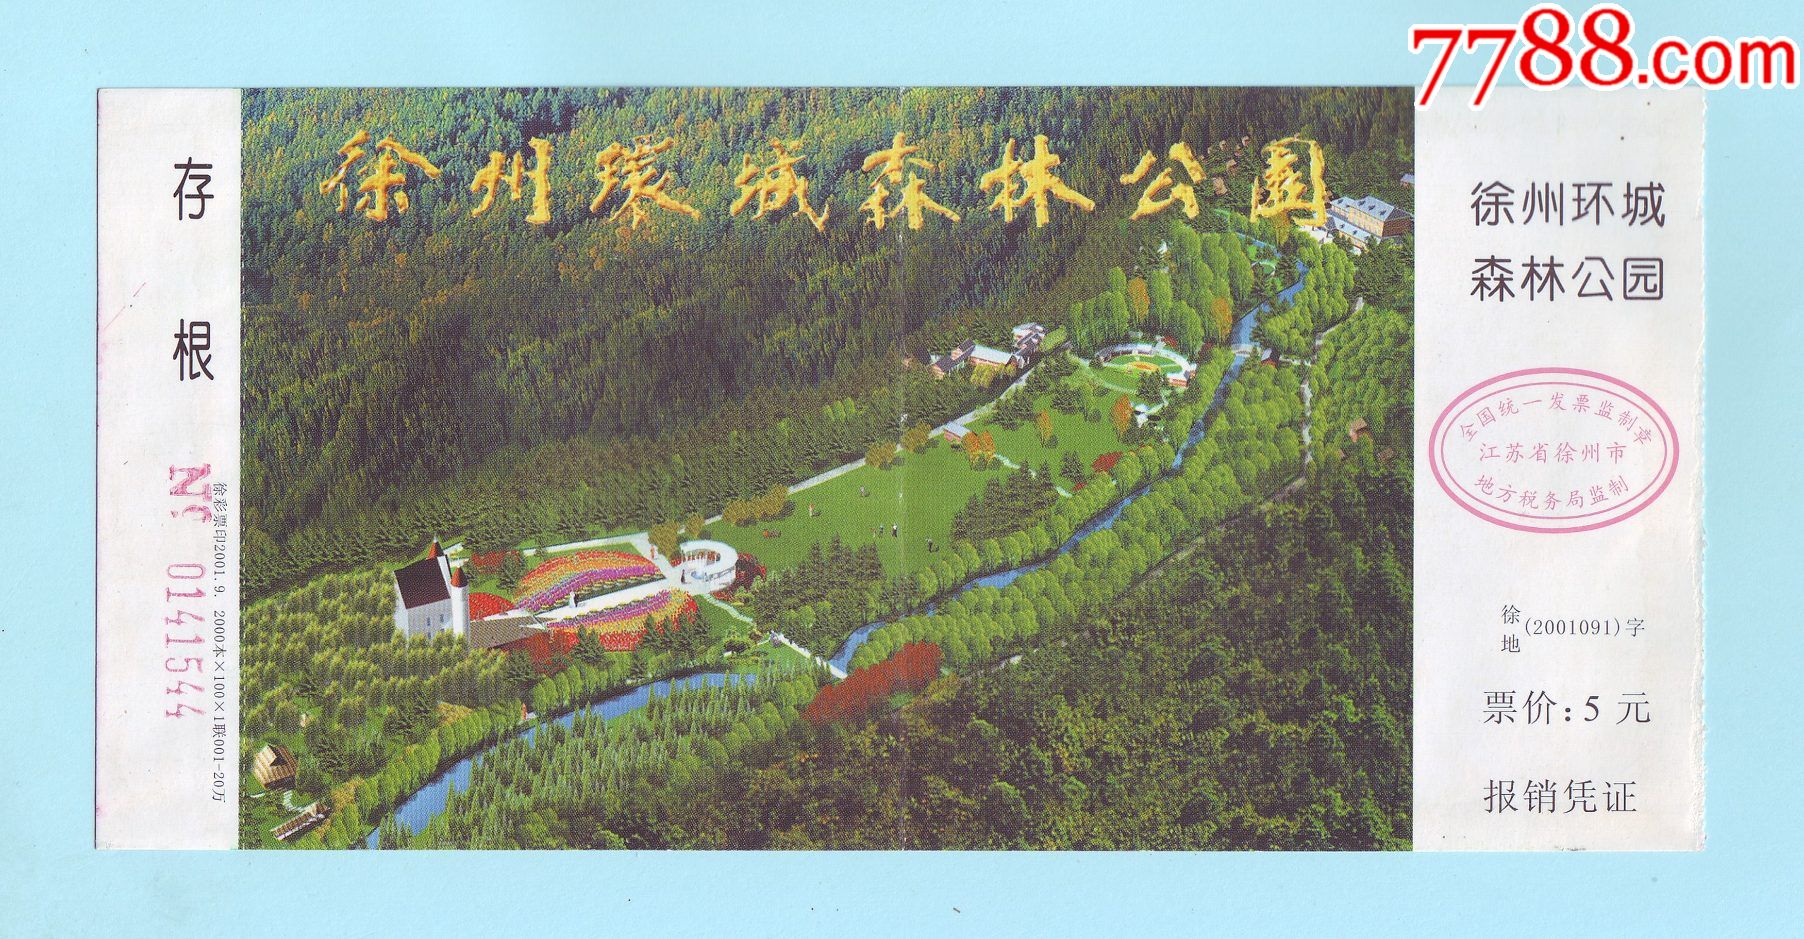 徐州环城森林公园门票带存根票价5元背面印有徐州环城国家森林公园